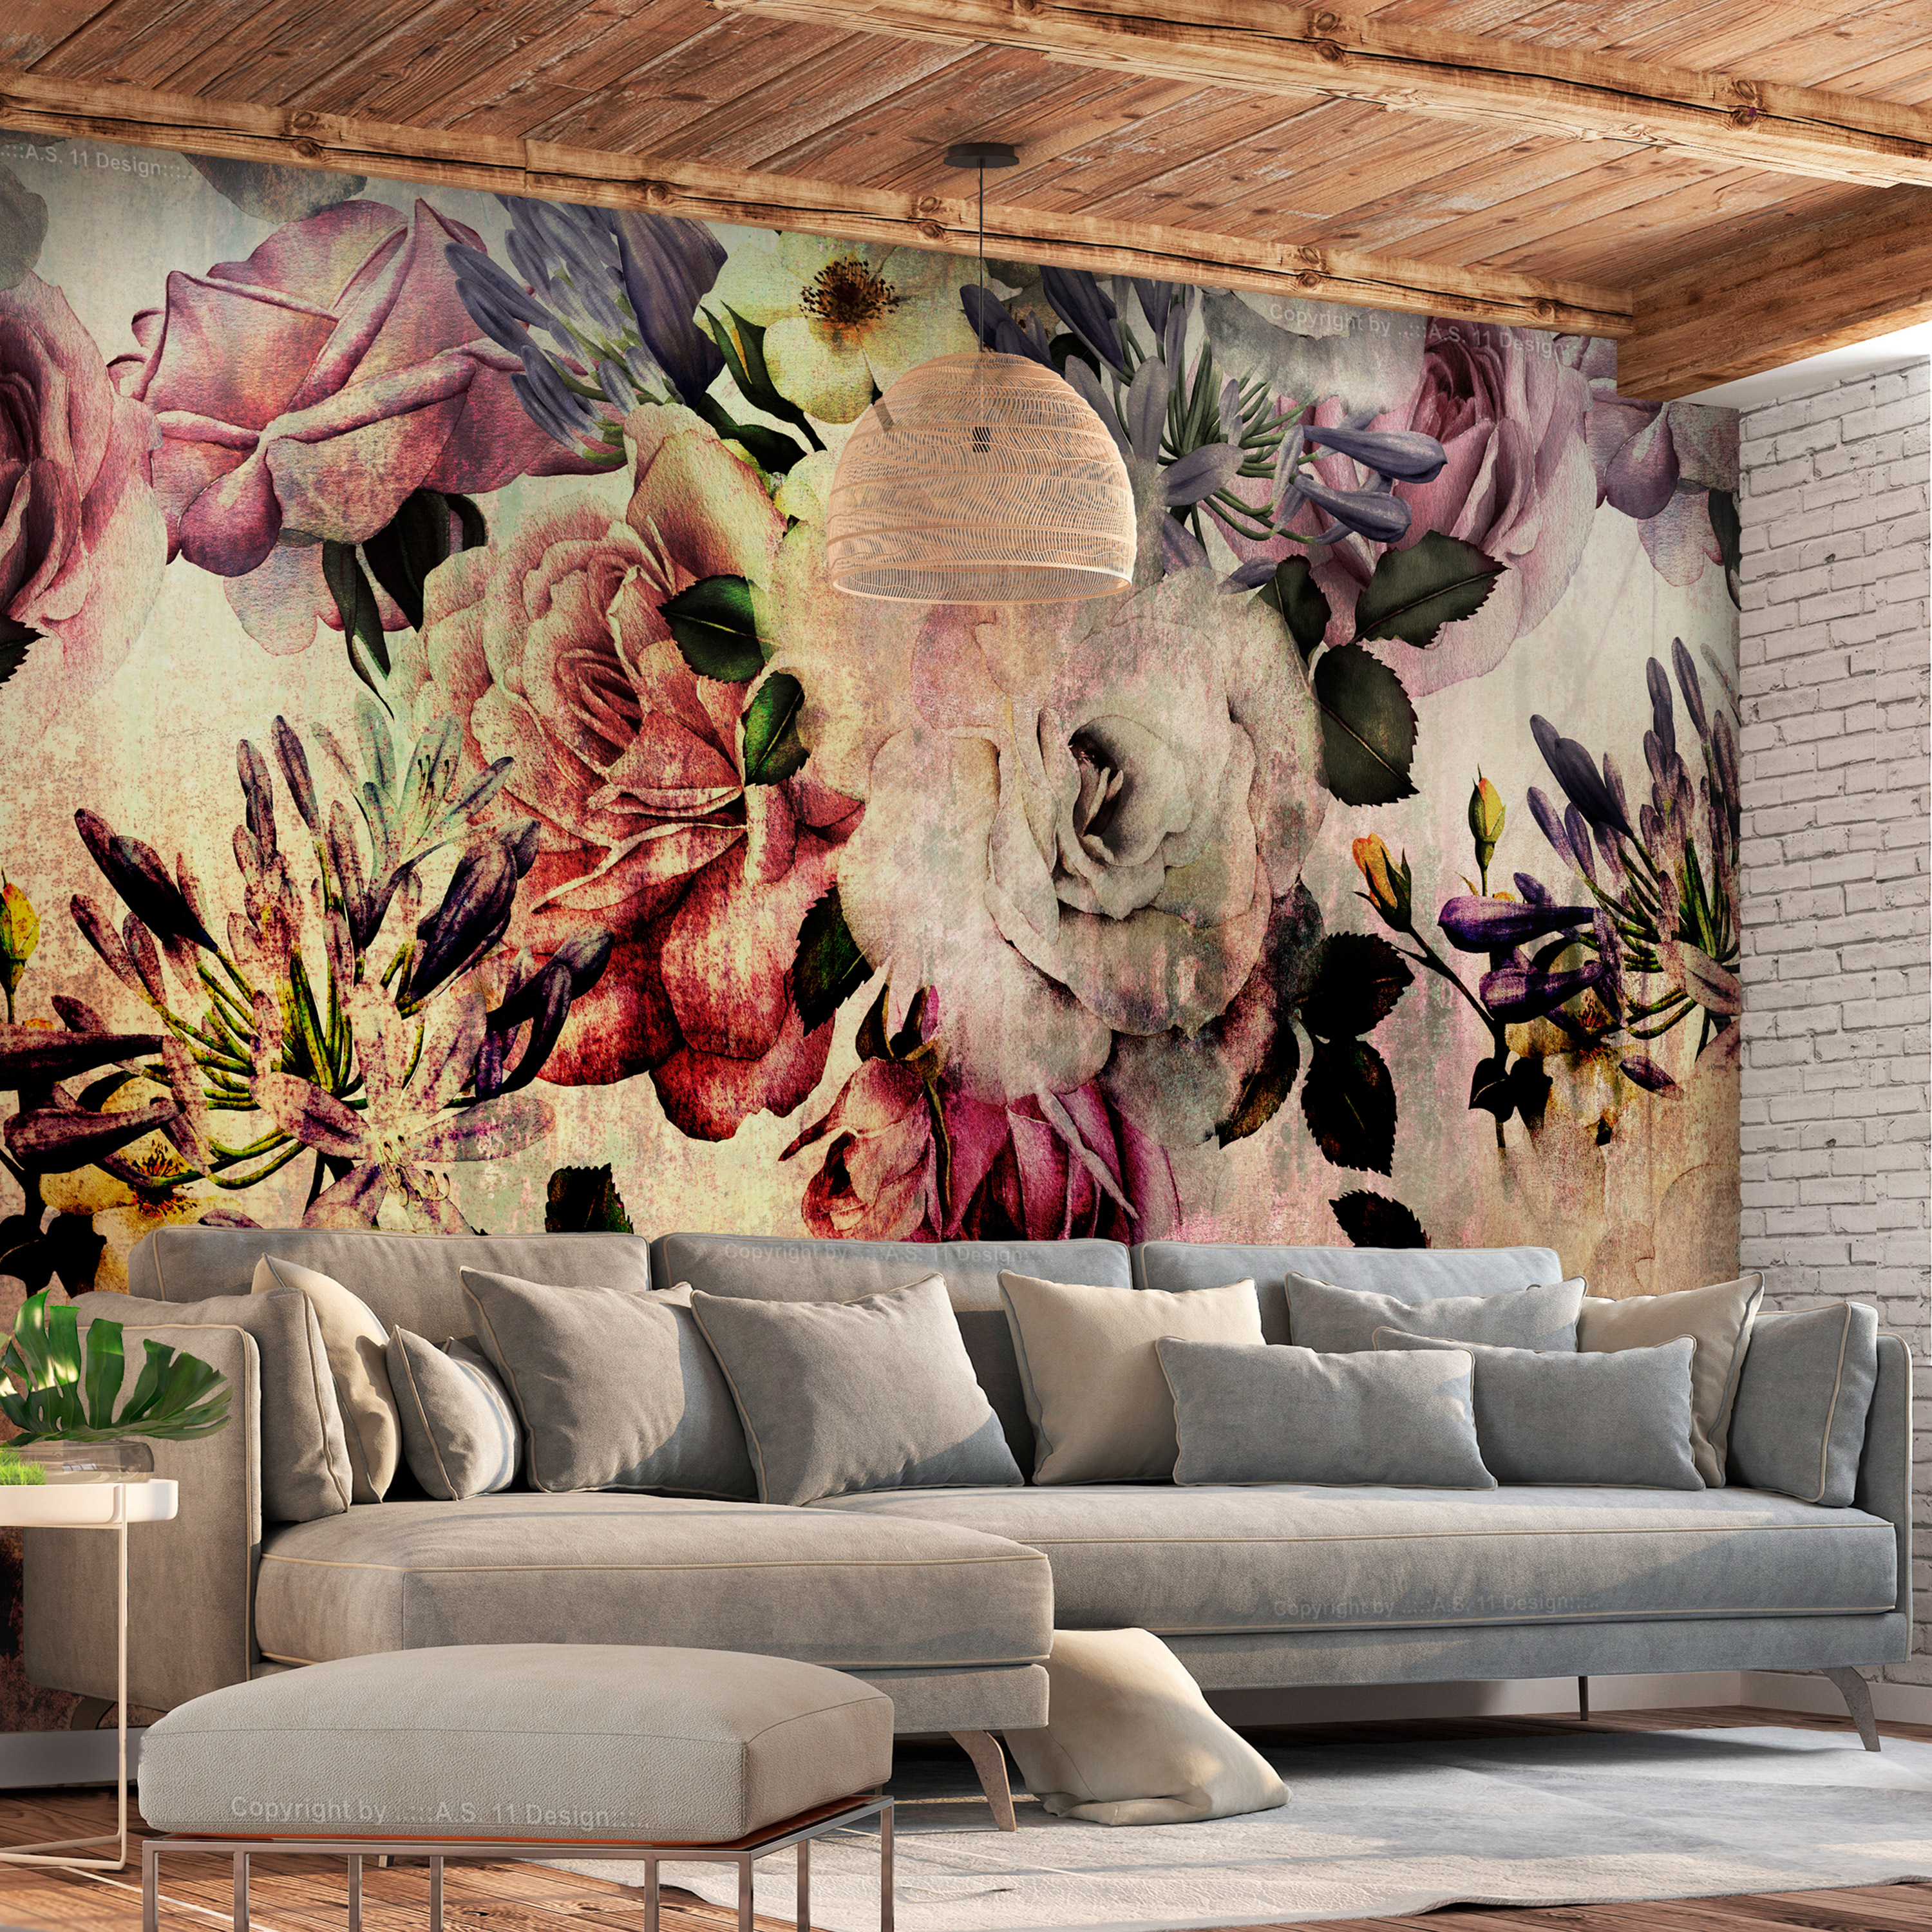 Self-adhesive Wallpaper - Nostalgia Flowers - 98x70